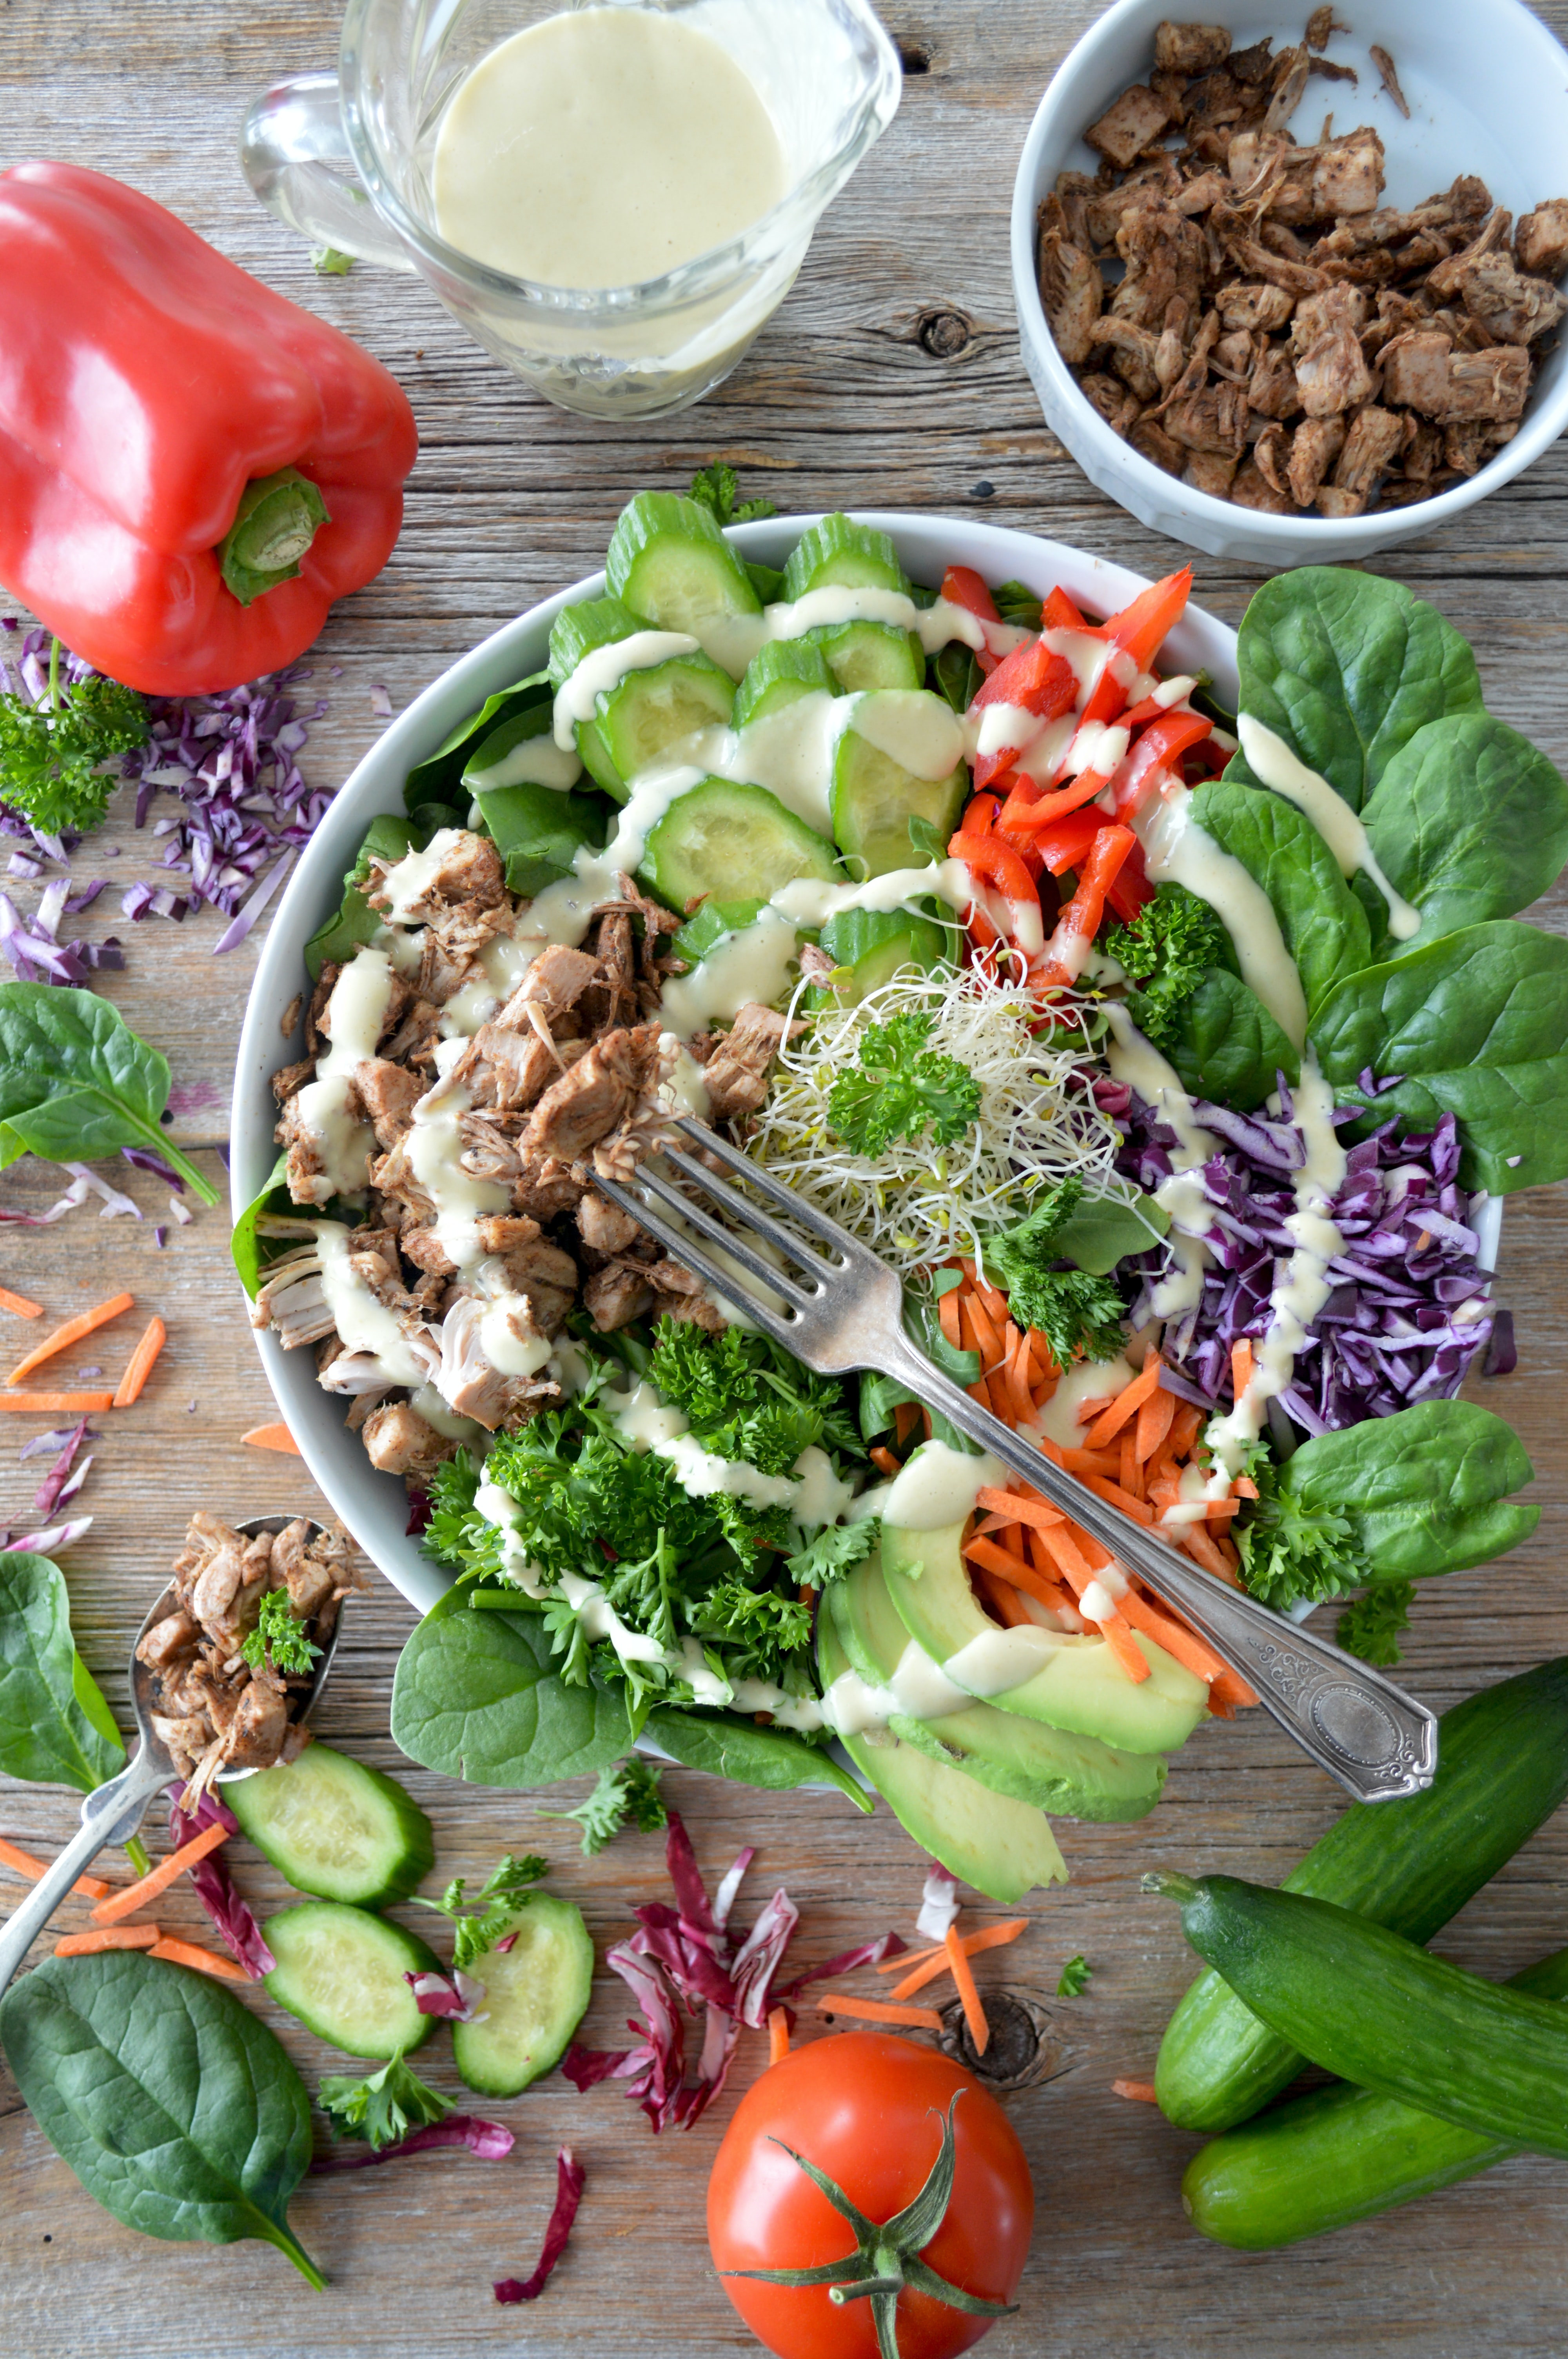 50 Best Salad Dressing Recipes